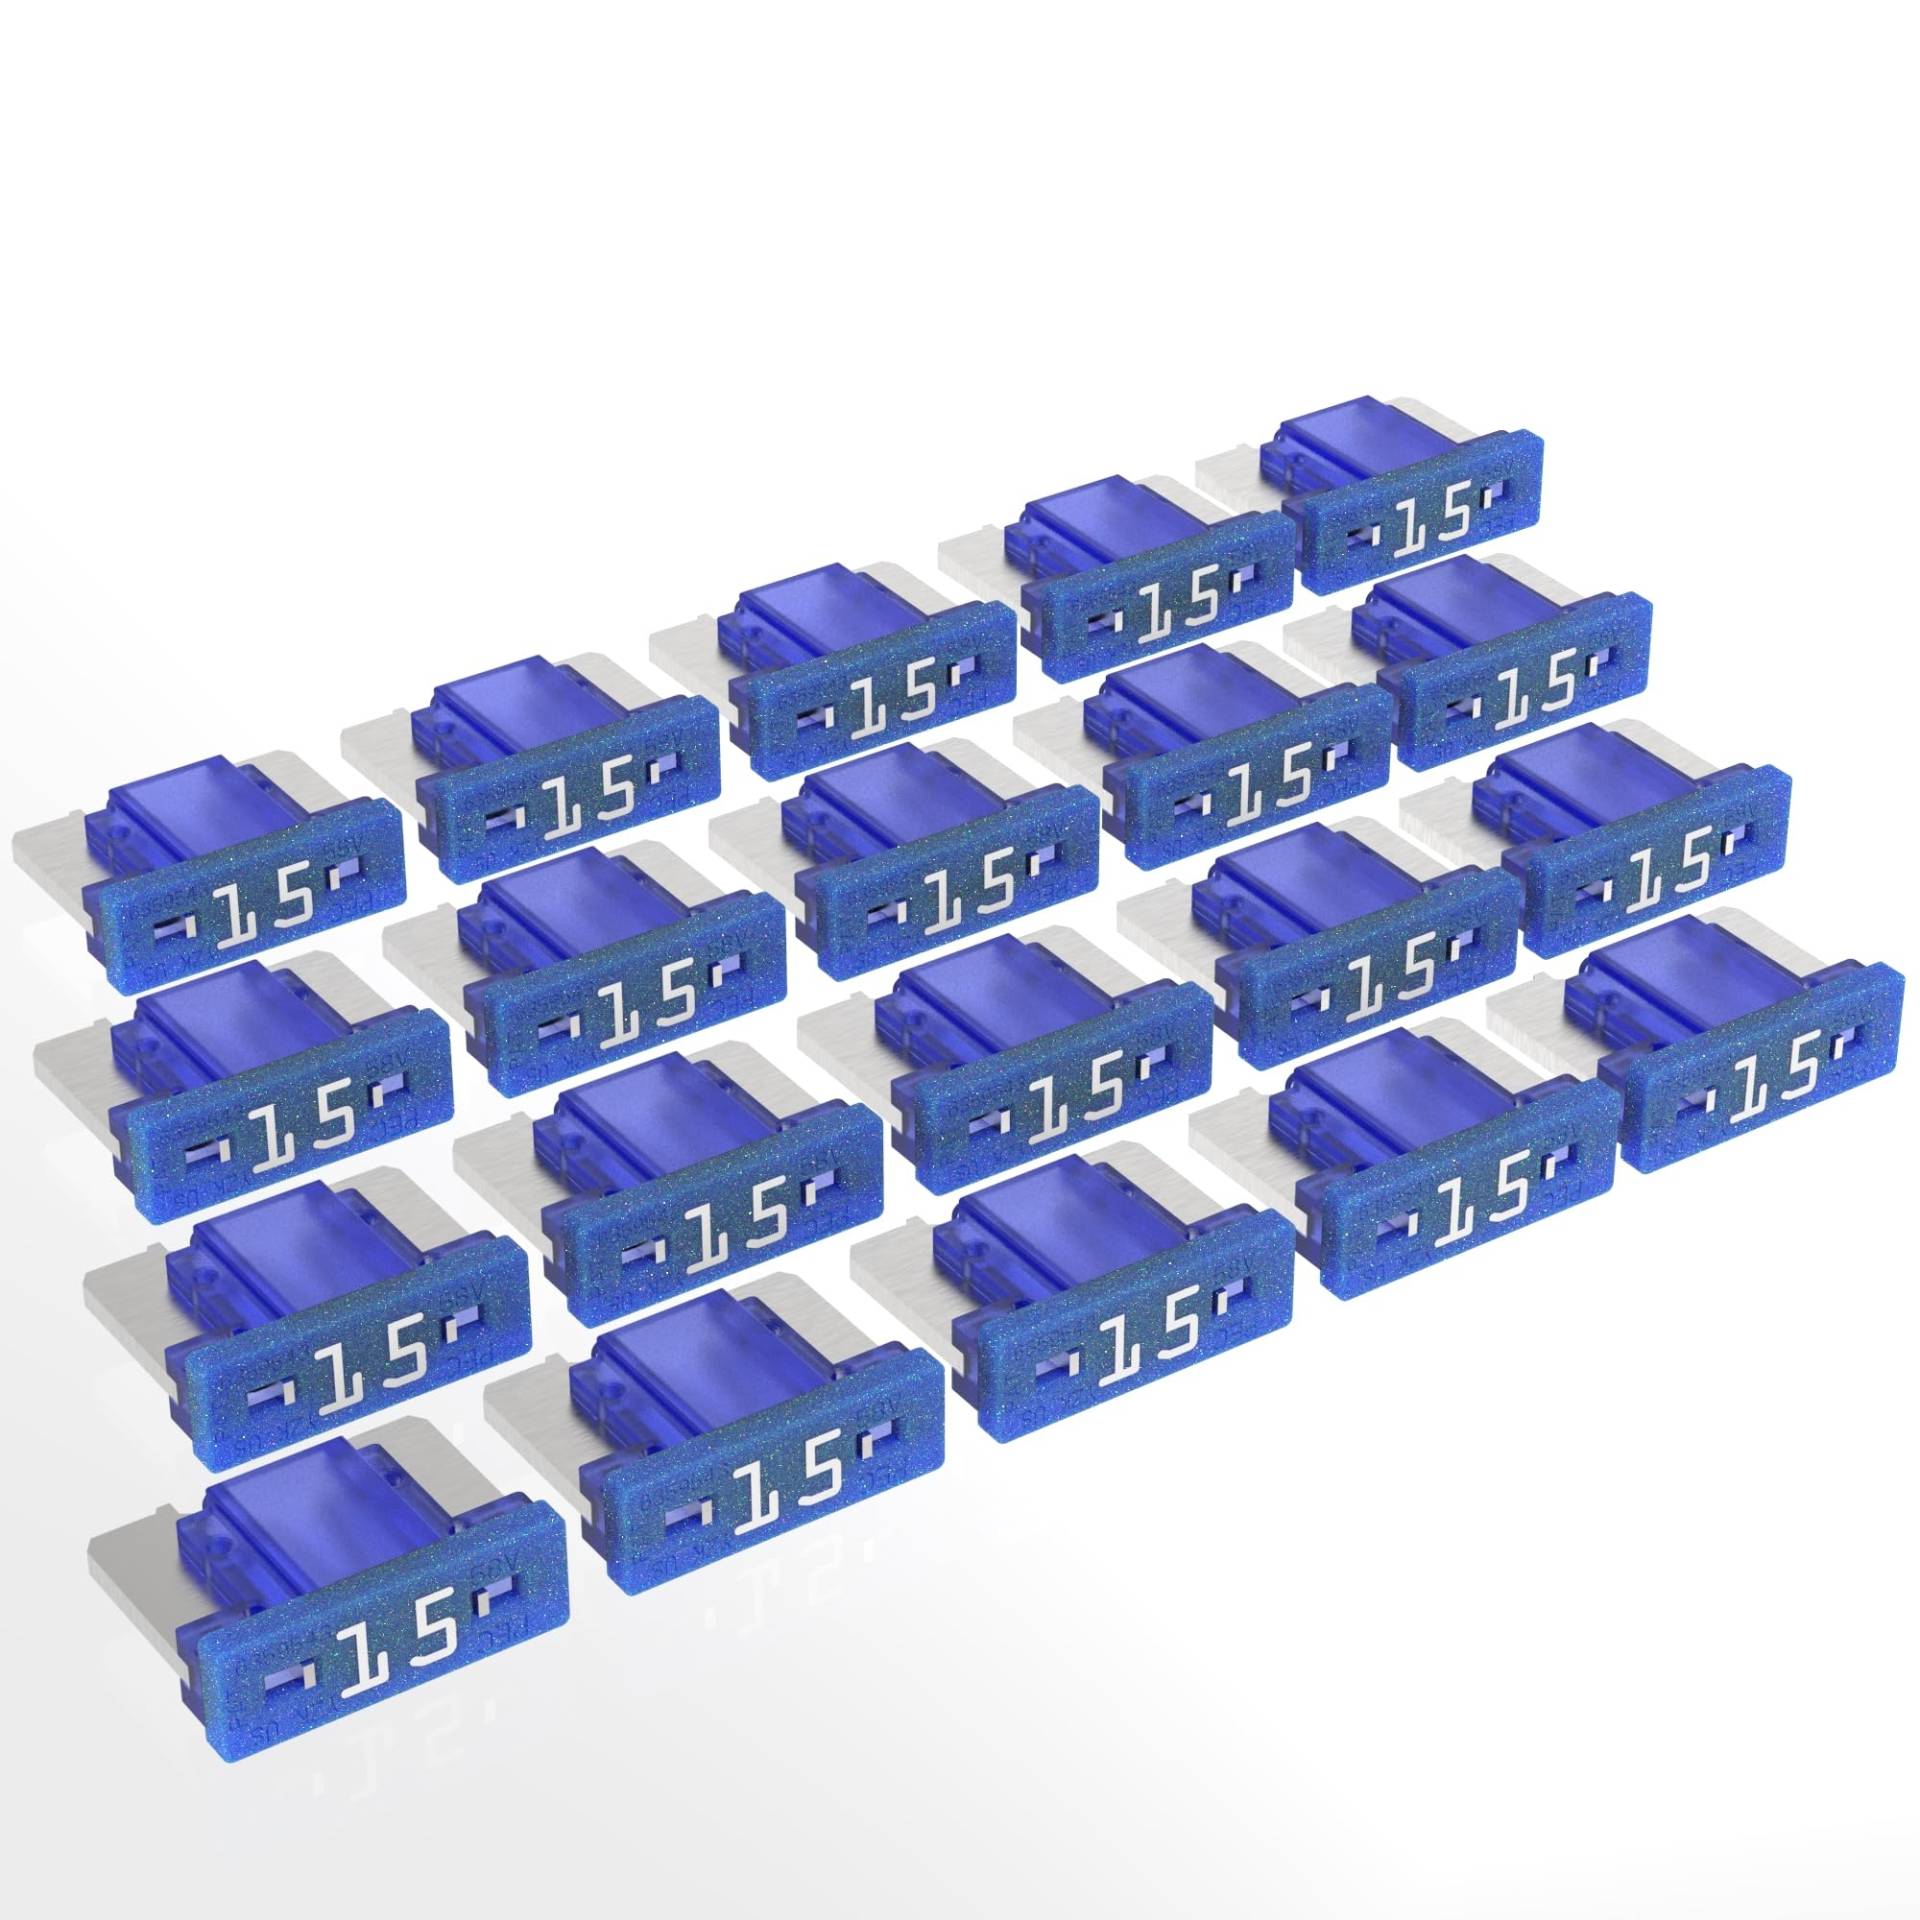 AUPROTEC Mini LP Kfz Sicherungen Flachstecksicherungen 2A - 30A Auswahl: 15A Ampere blau, 20 Stück von AUPROTEC